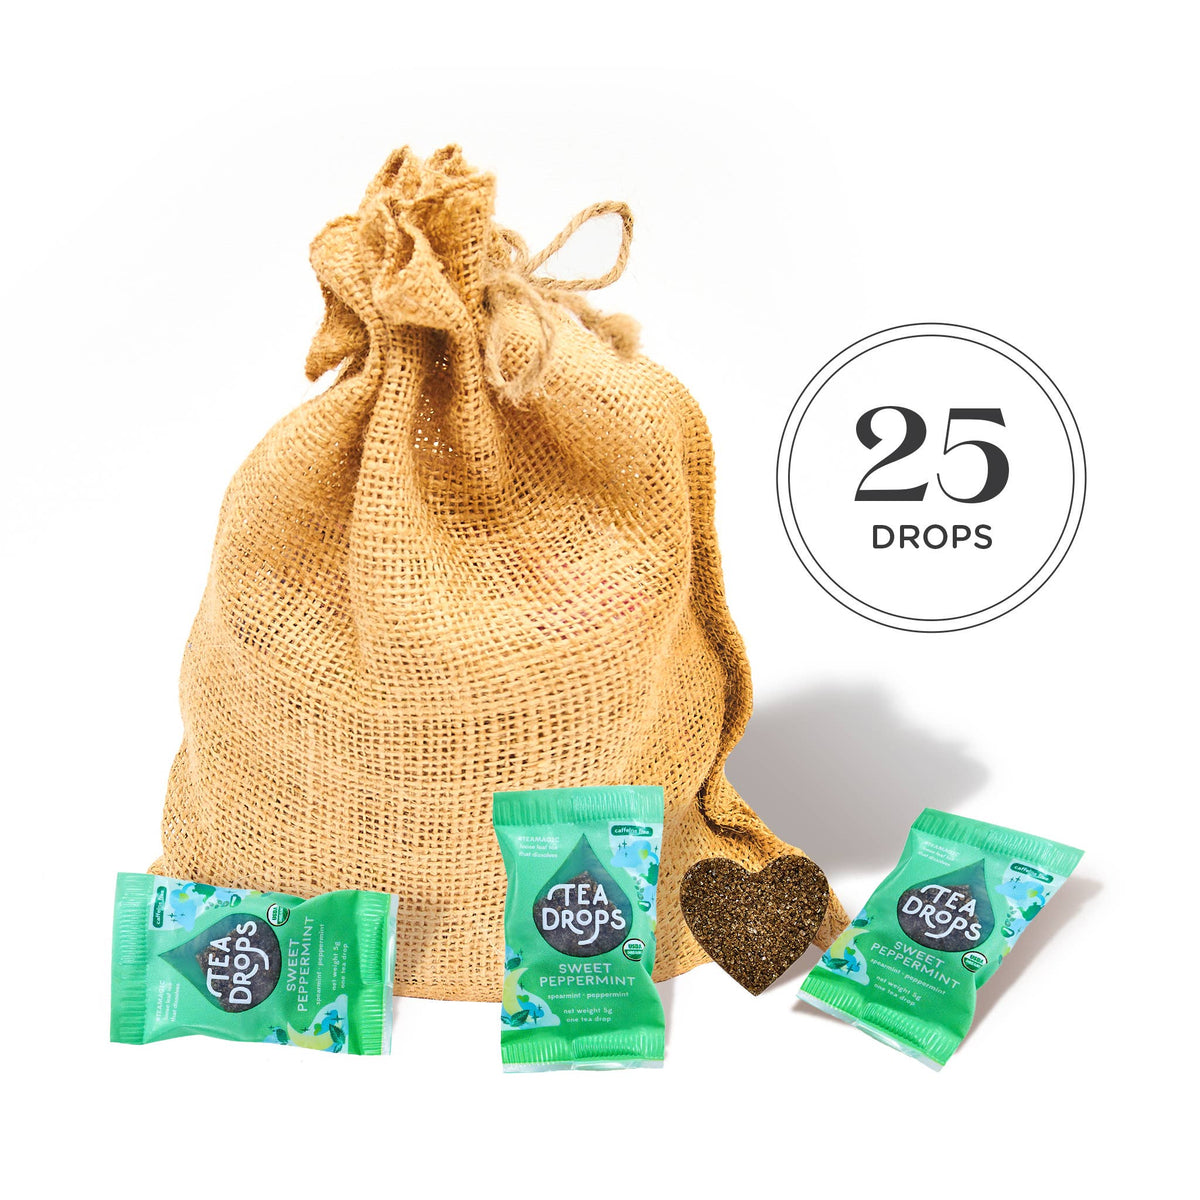 Tea Drops - Classic Tea Drops Case - 25 Bulk